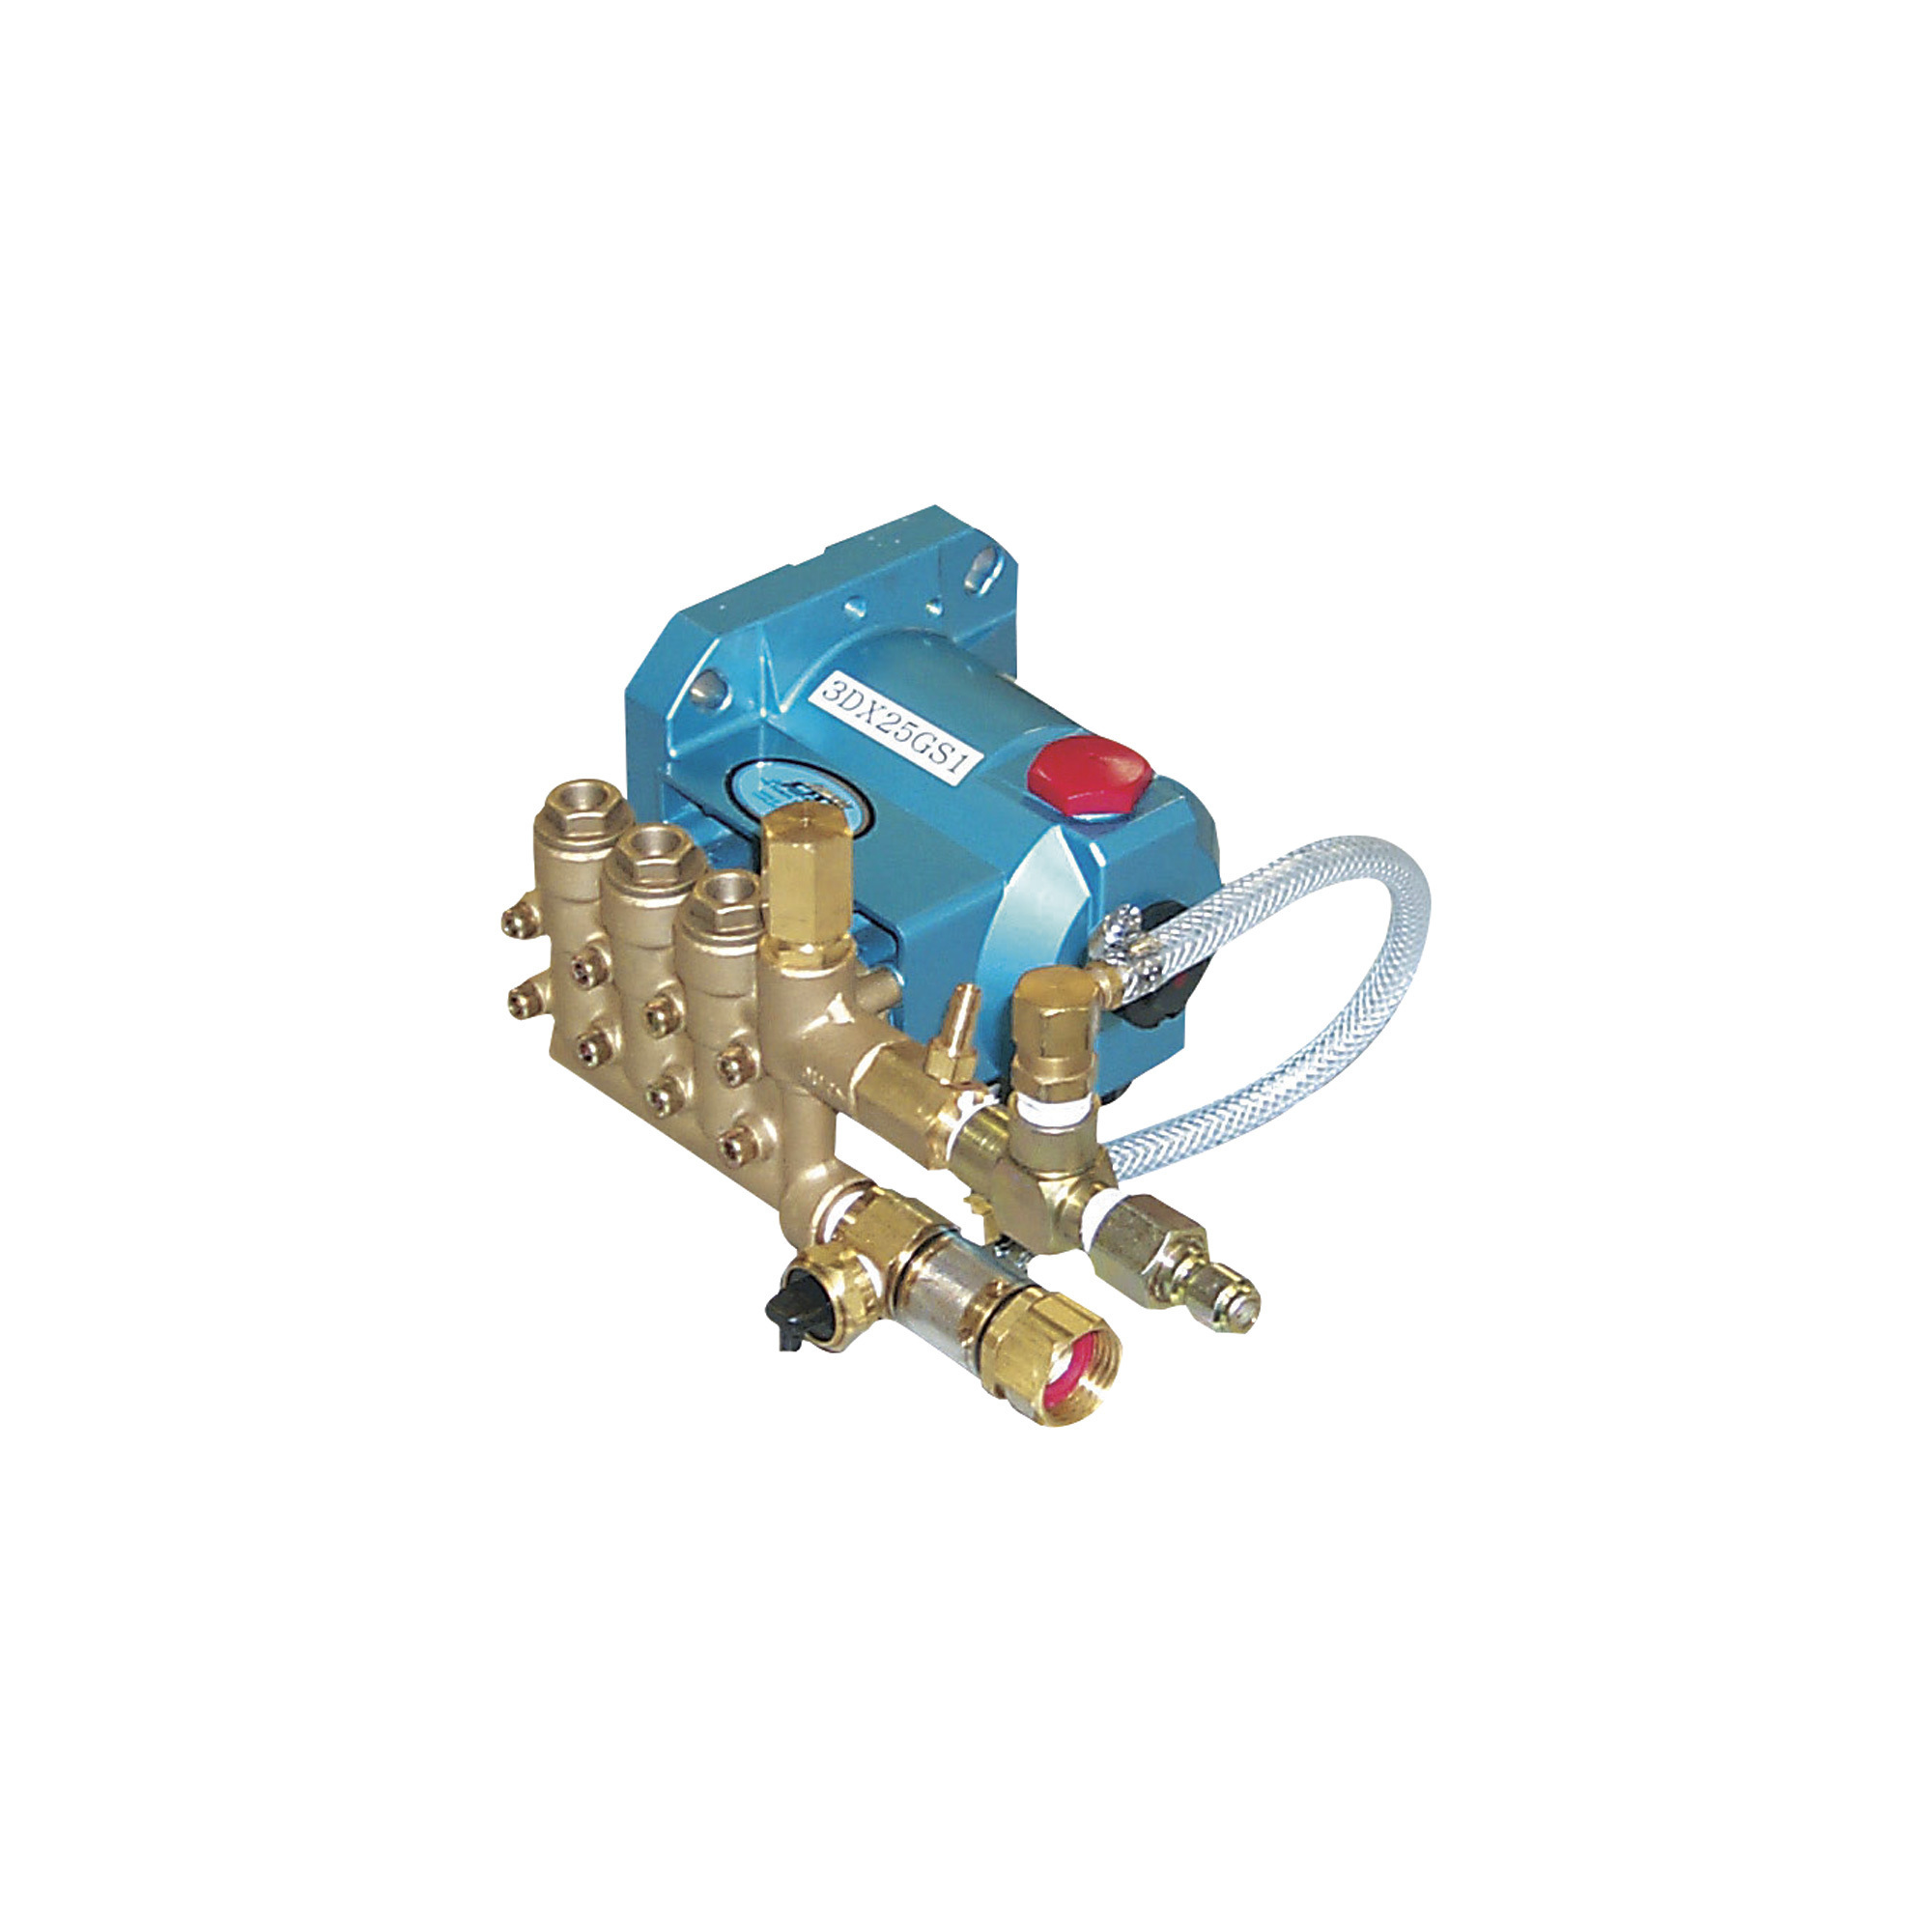 CAT Pumps Pressure Washer Pump, 2750 PSI, 2.5 GPM, Direct Drive, Gas